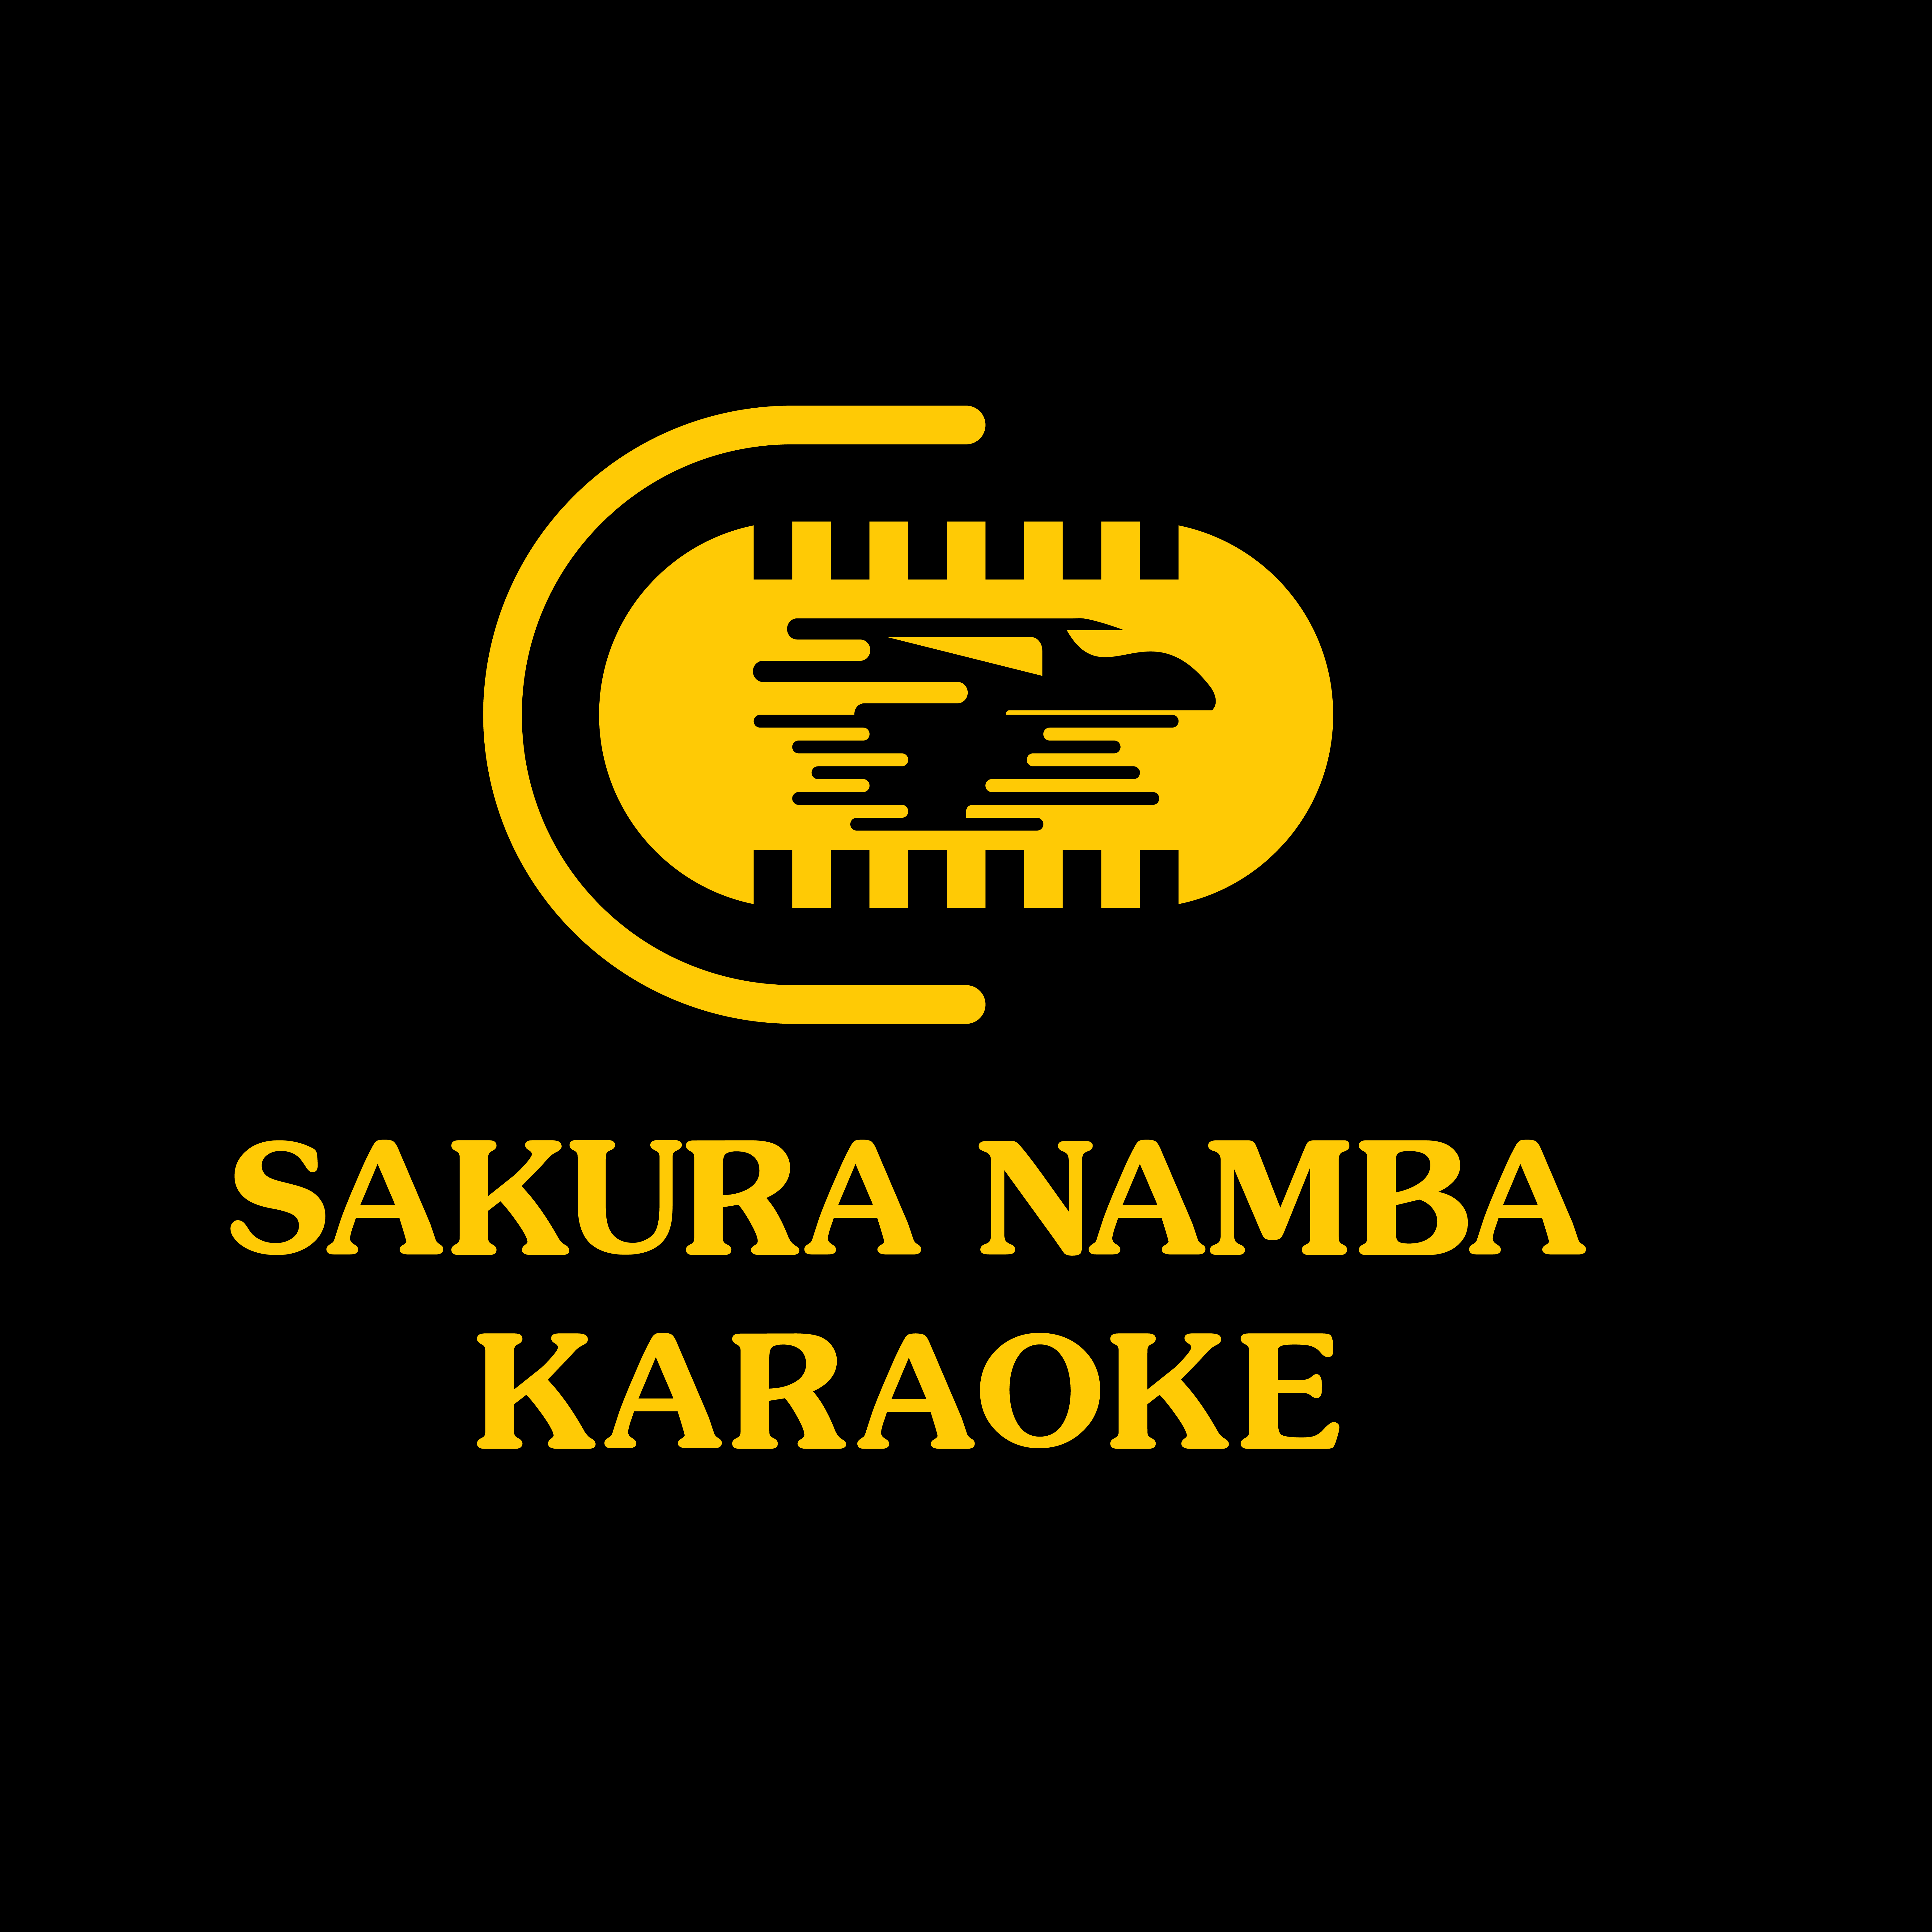 Sakura Namba Karaoke